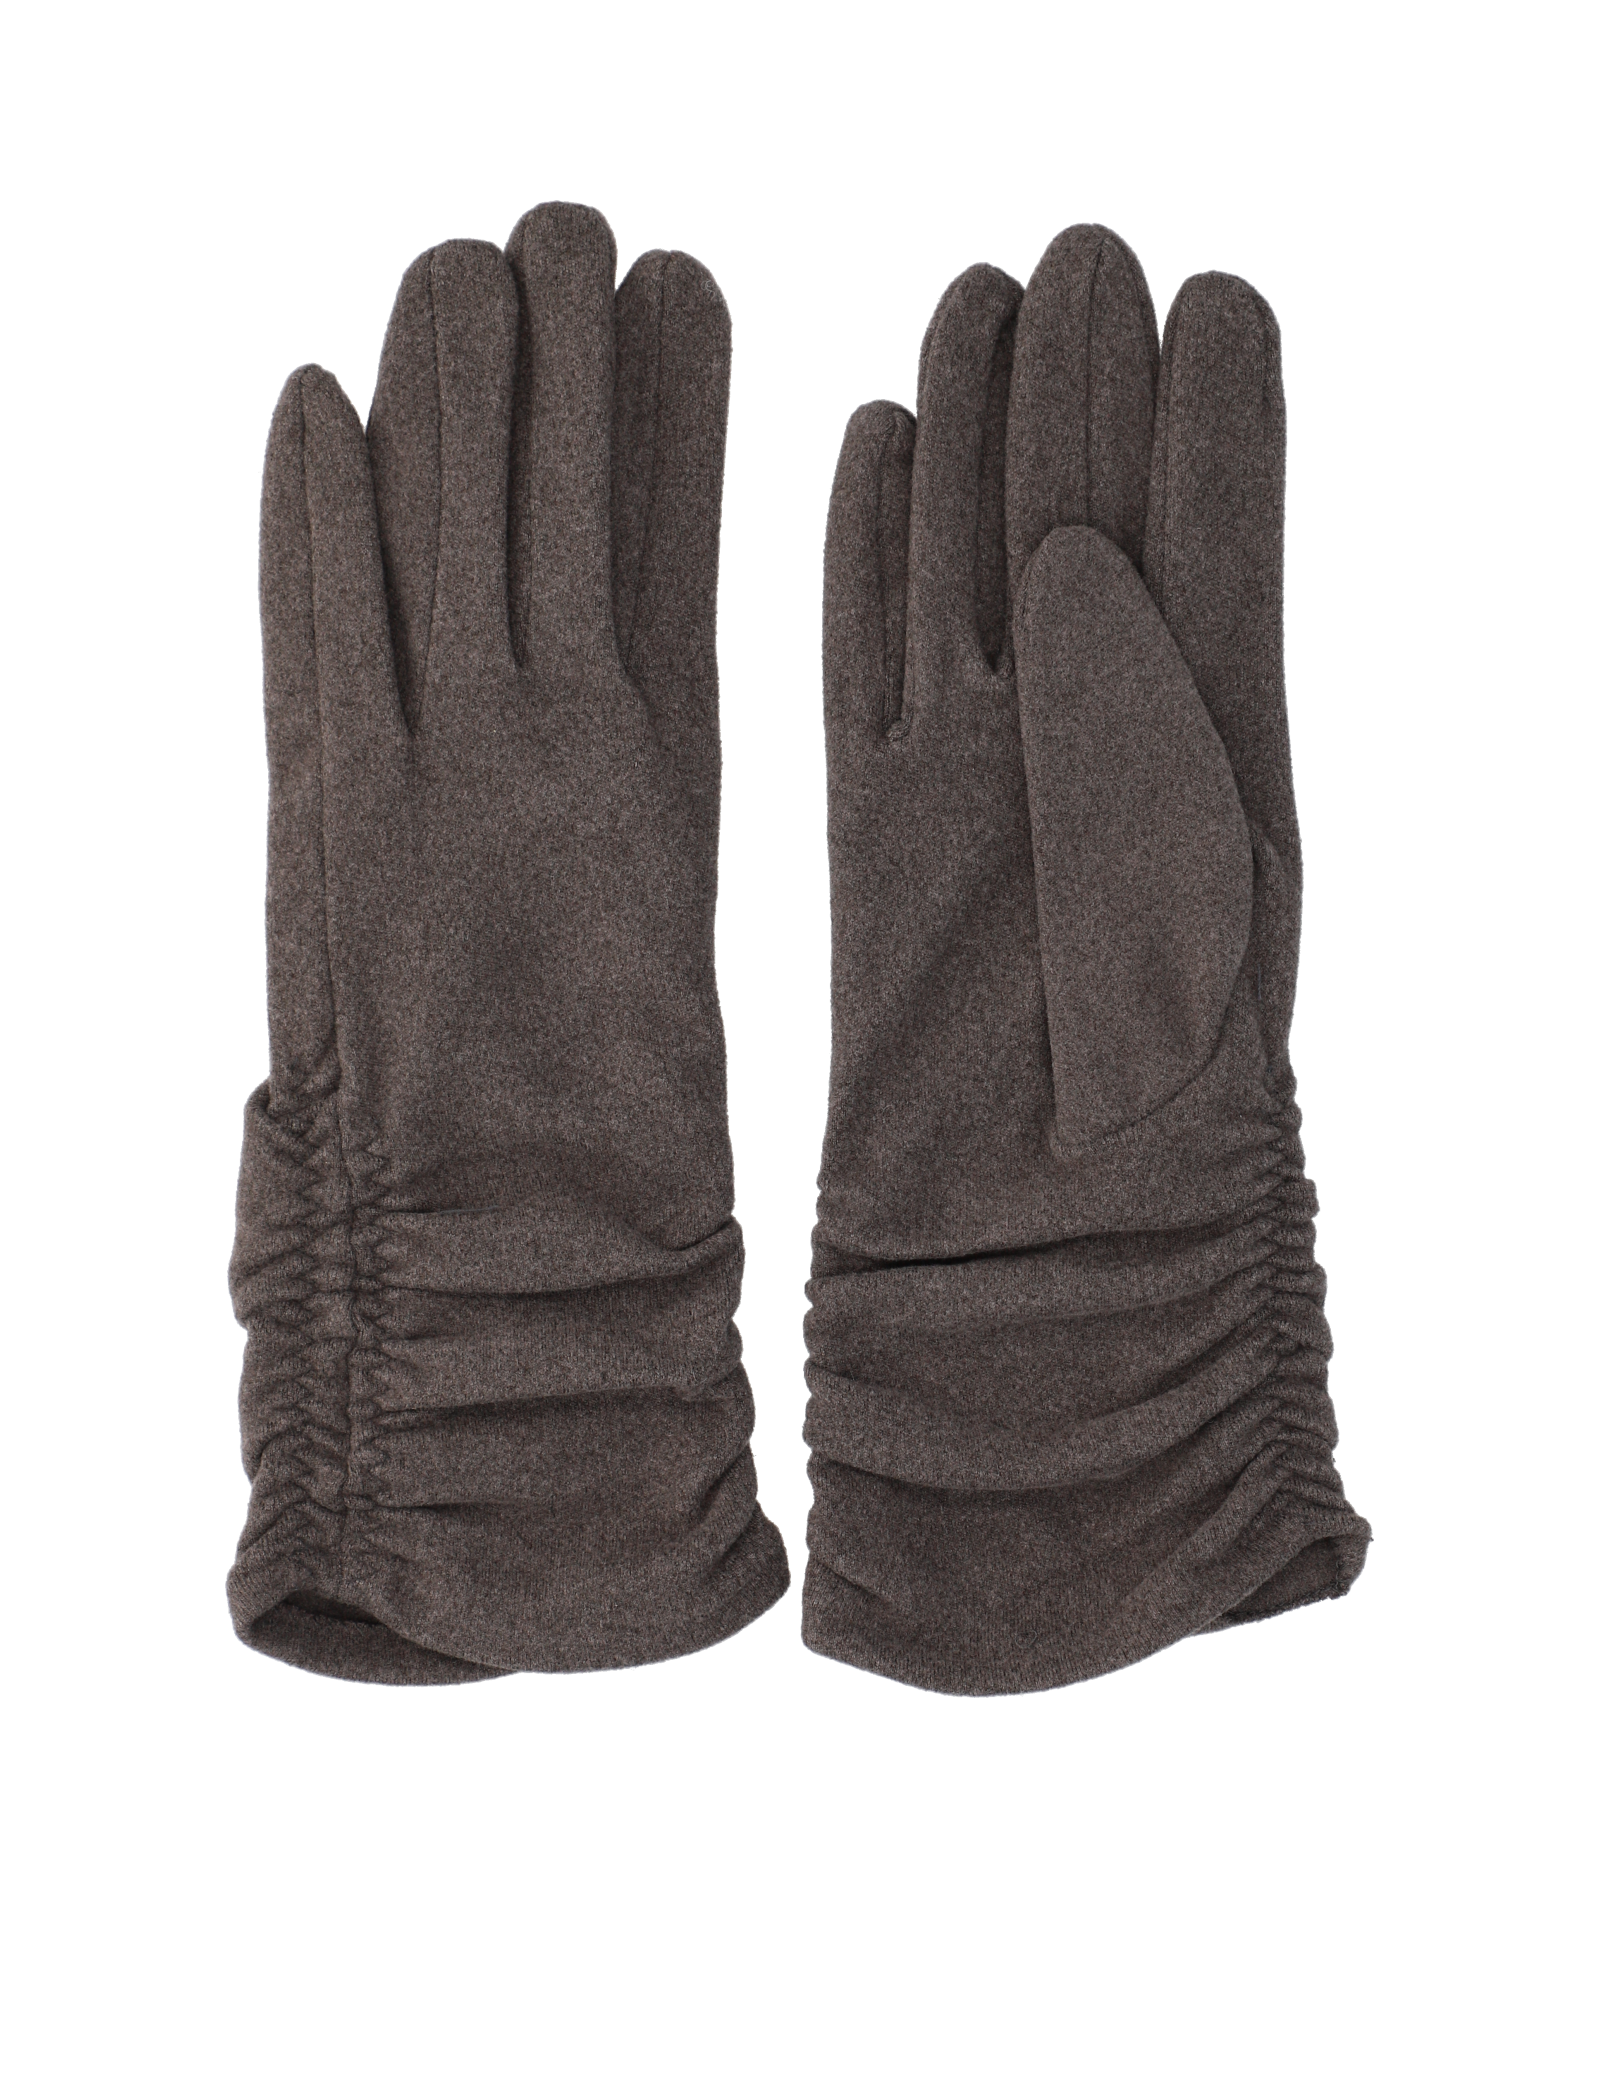 Lazzarini Textil Handschuh  - Onlineshop HUMANIC